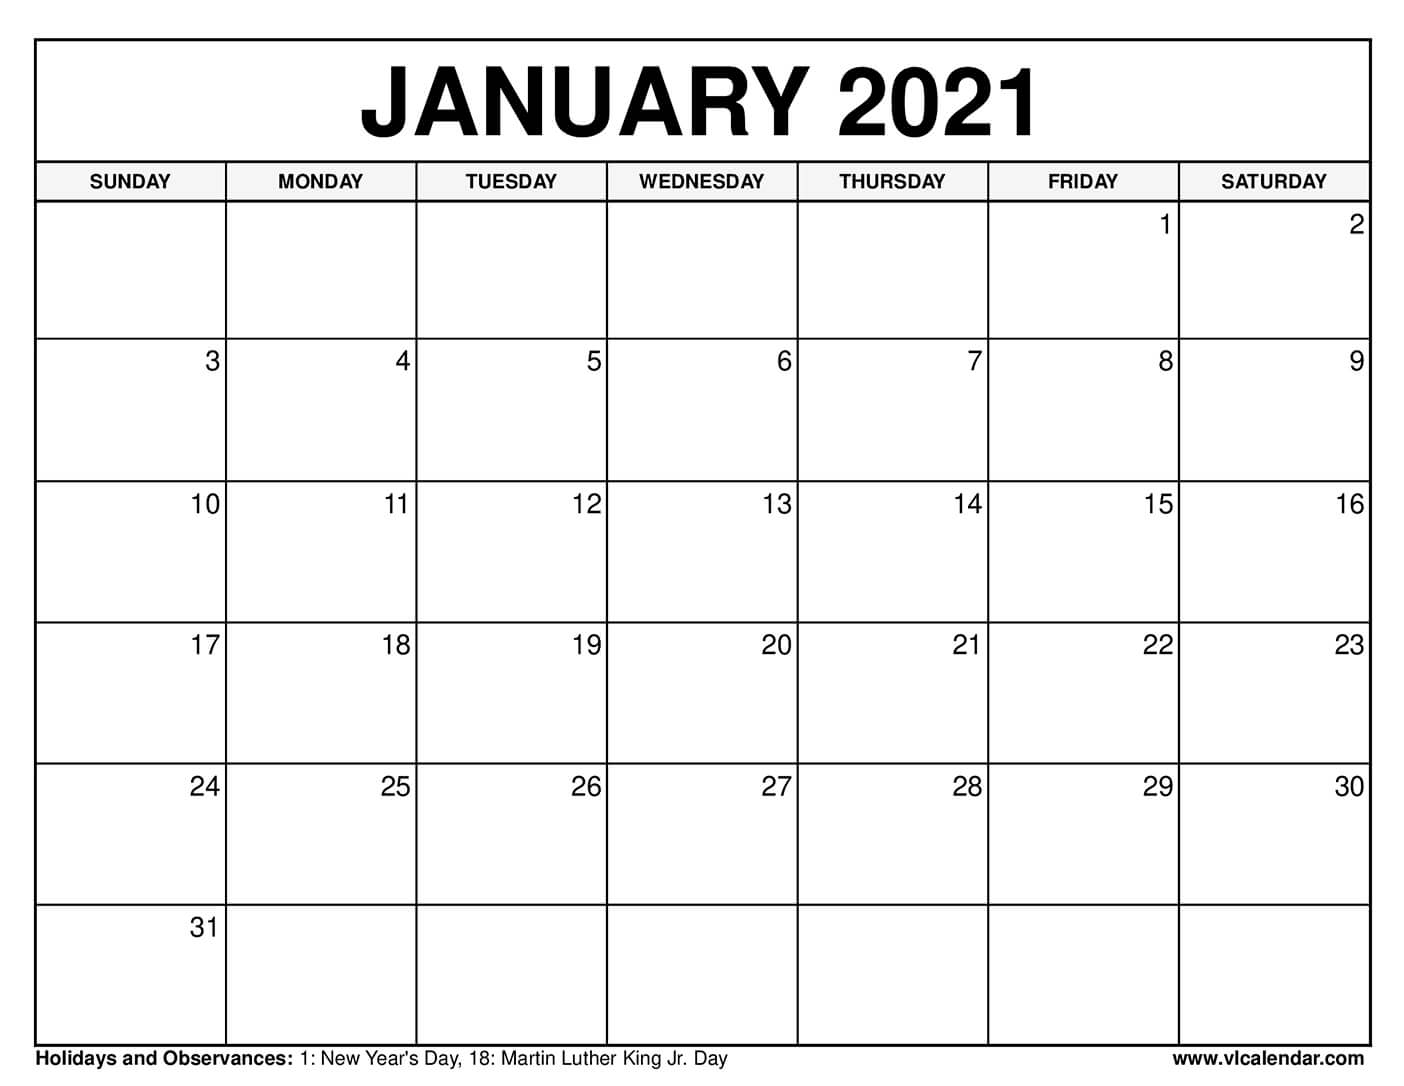 Je 20. ledna 2021 svátek?